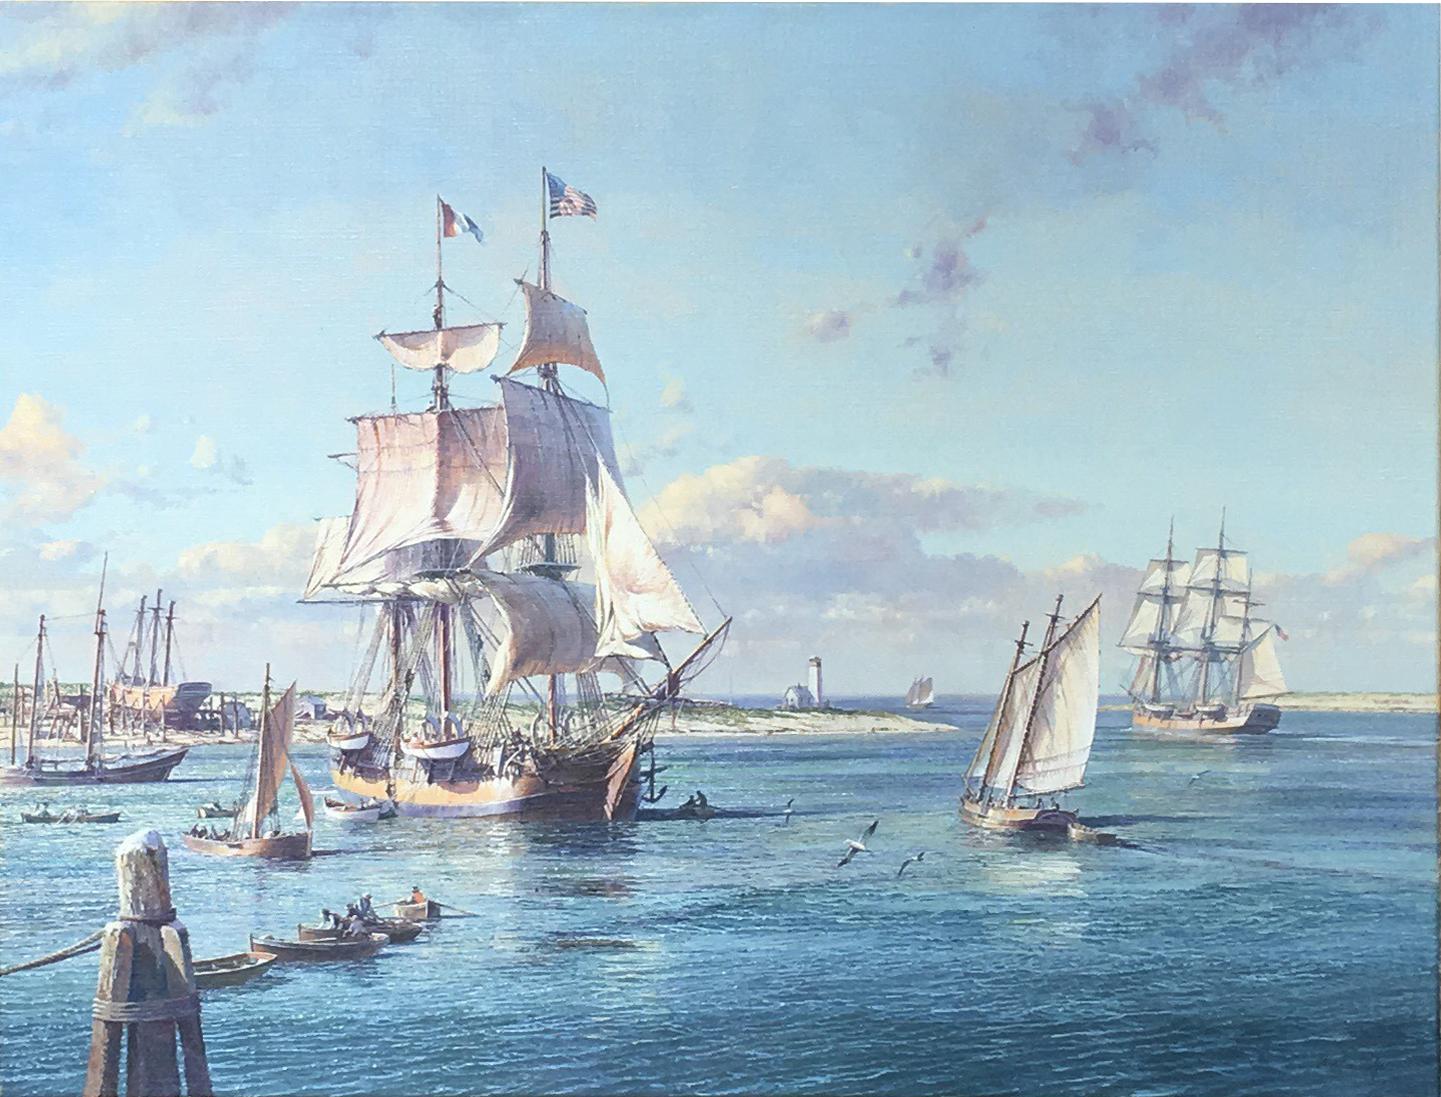 The American Whaler Massachusetts Leaving Nantucket